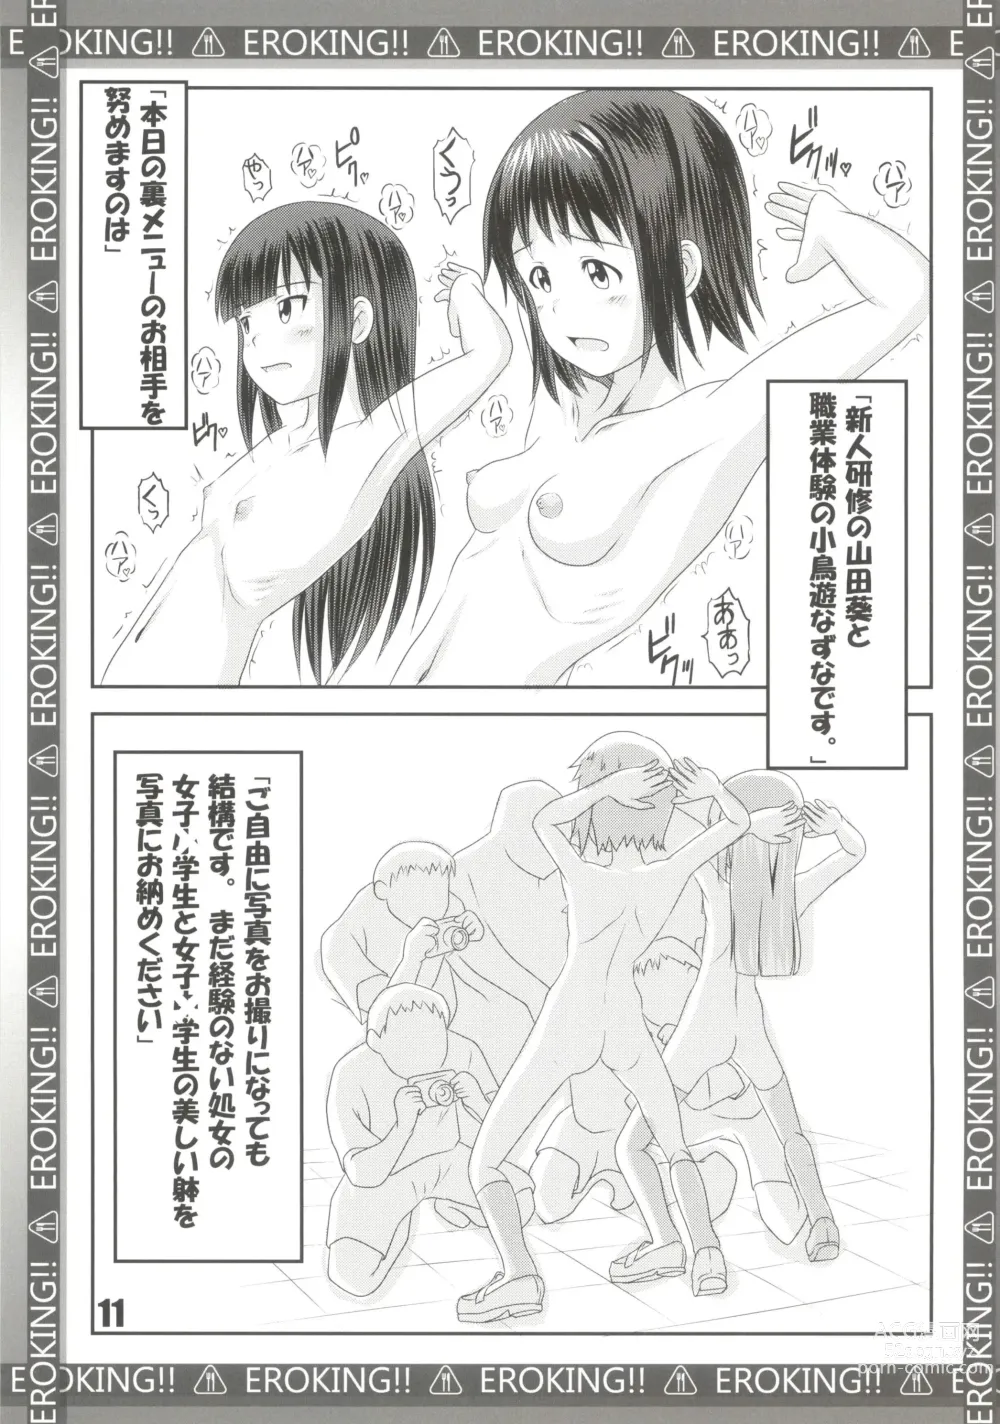 Page 11 of doujinshi EROKING